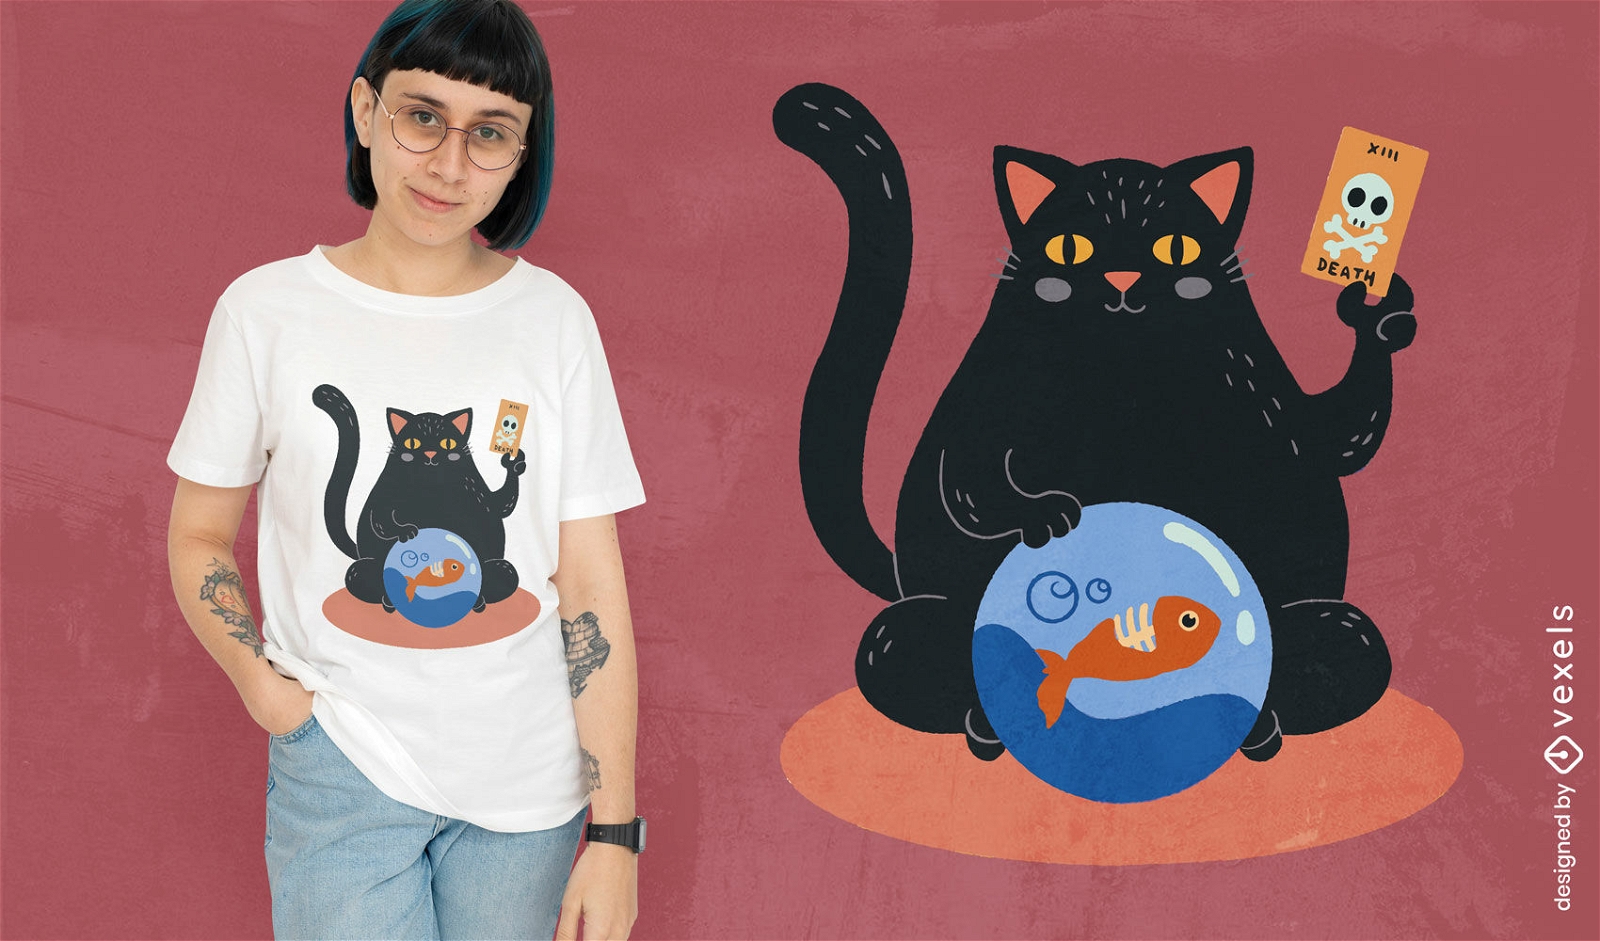 Fortune teller cat t-shirt design